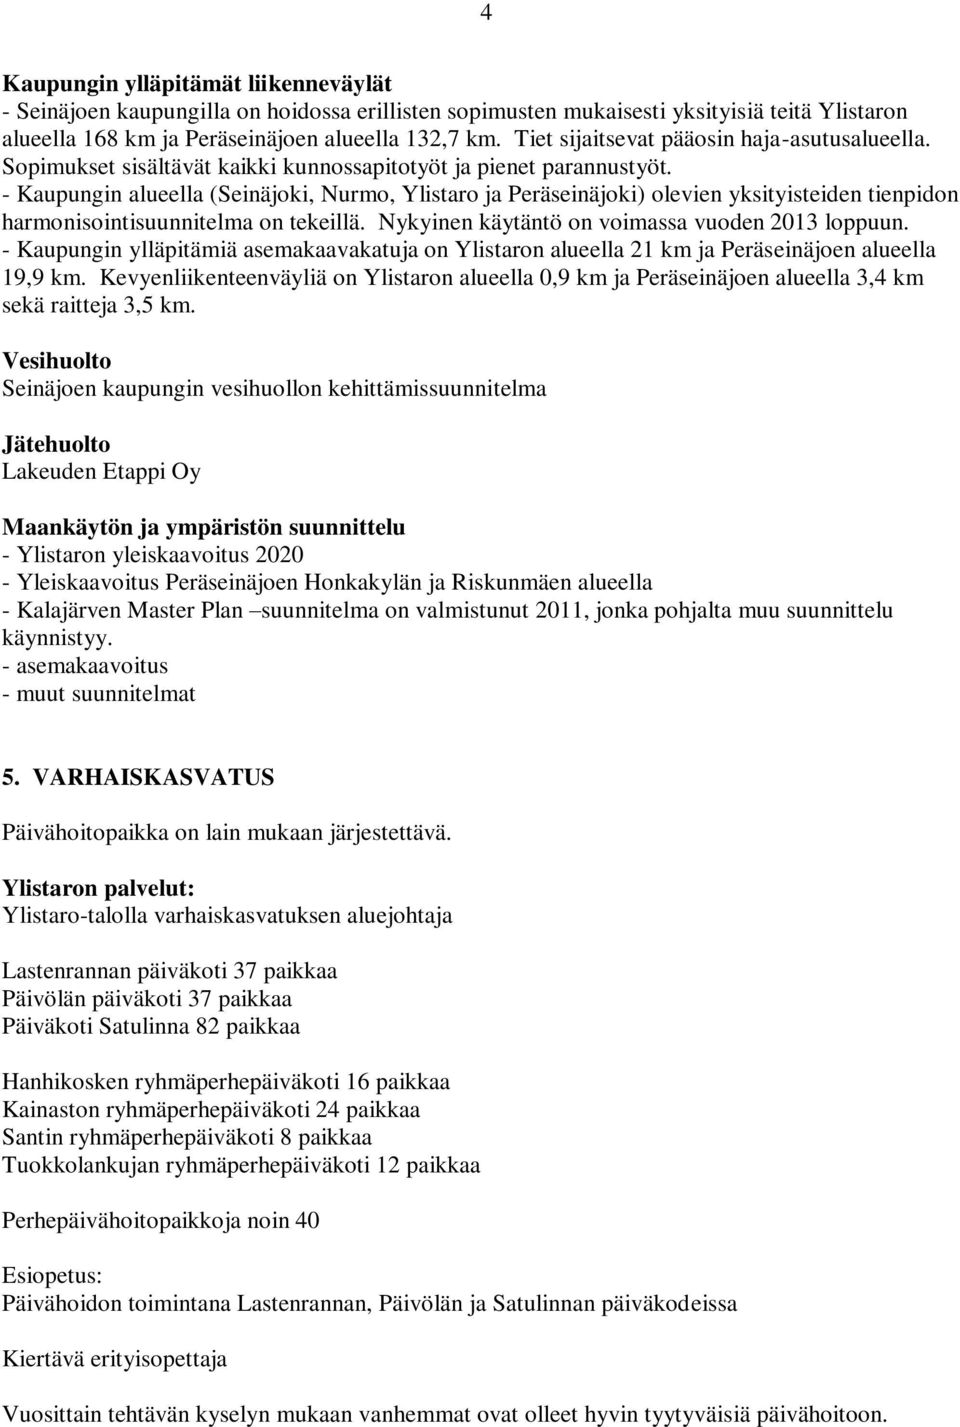 - Kaupungin alueella (Seinäjoki, Nurmo, Ylistaro ja Peräseinäjoki) olevien yksityisteiden tienpidon harmonisointisuunnitelma on tekeillä. Nykyinen käytäntö on voimassa vuoden 2013 loppuun.